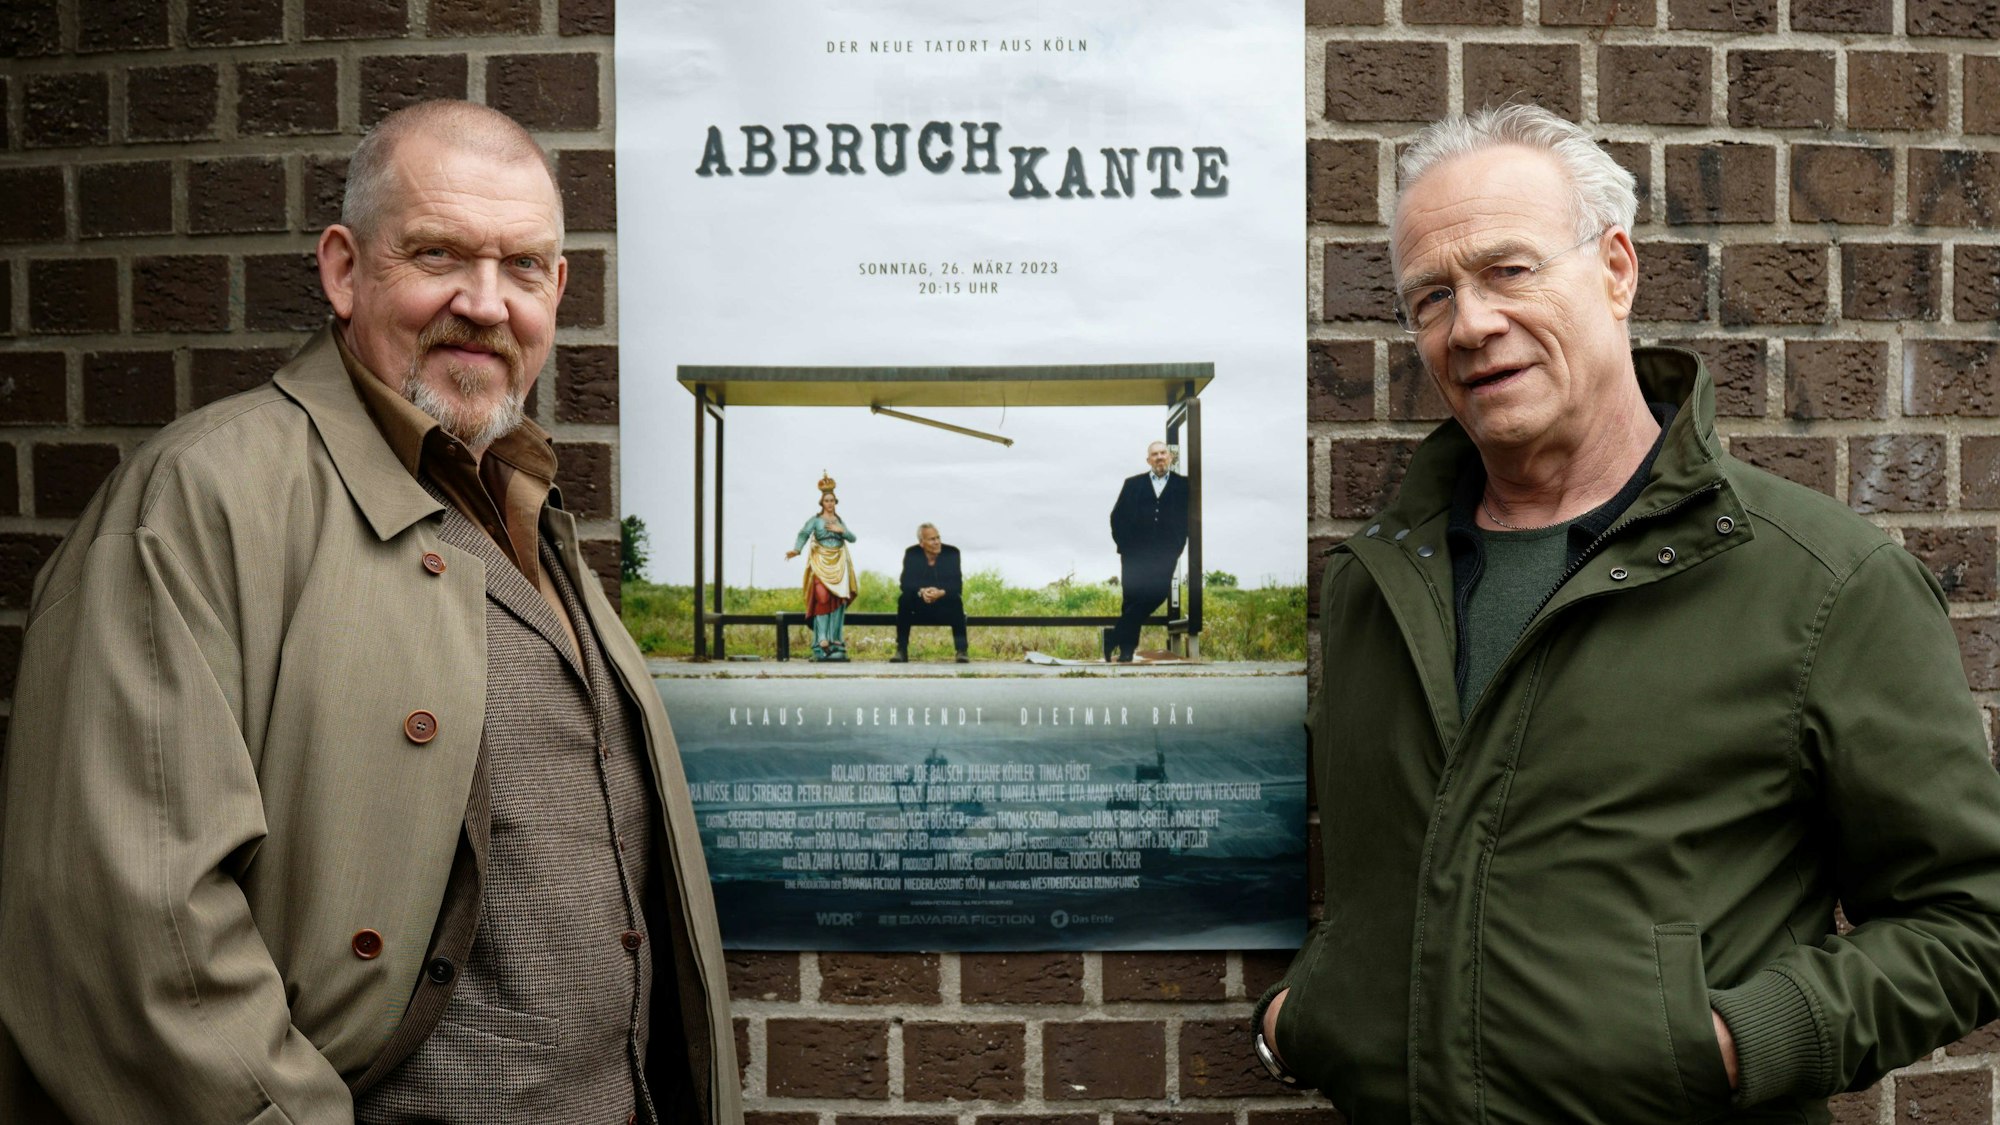 Die Schauspieler Klaus J. Behrendt und Dietmar Bär stehen bei einem Pressetermin bei Dreharbeiten vor einem Plakat.